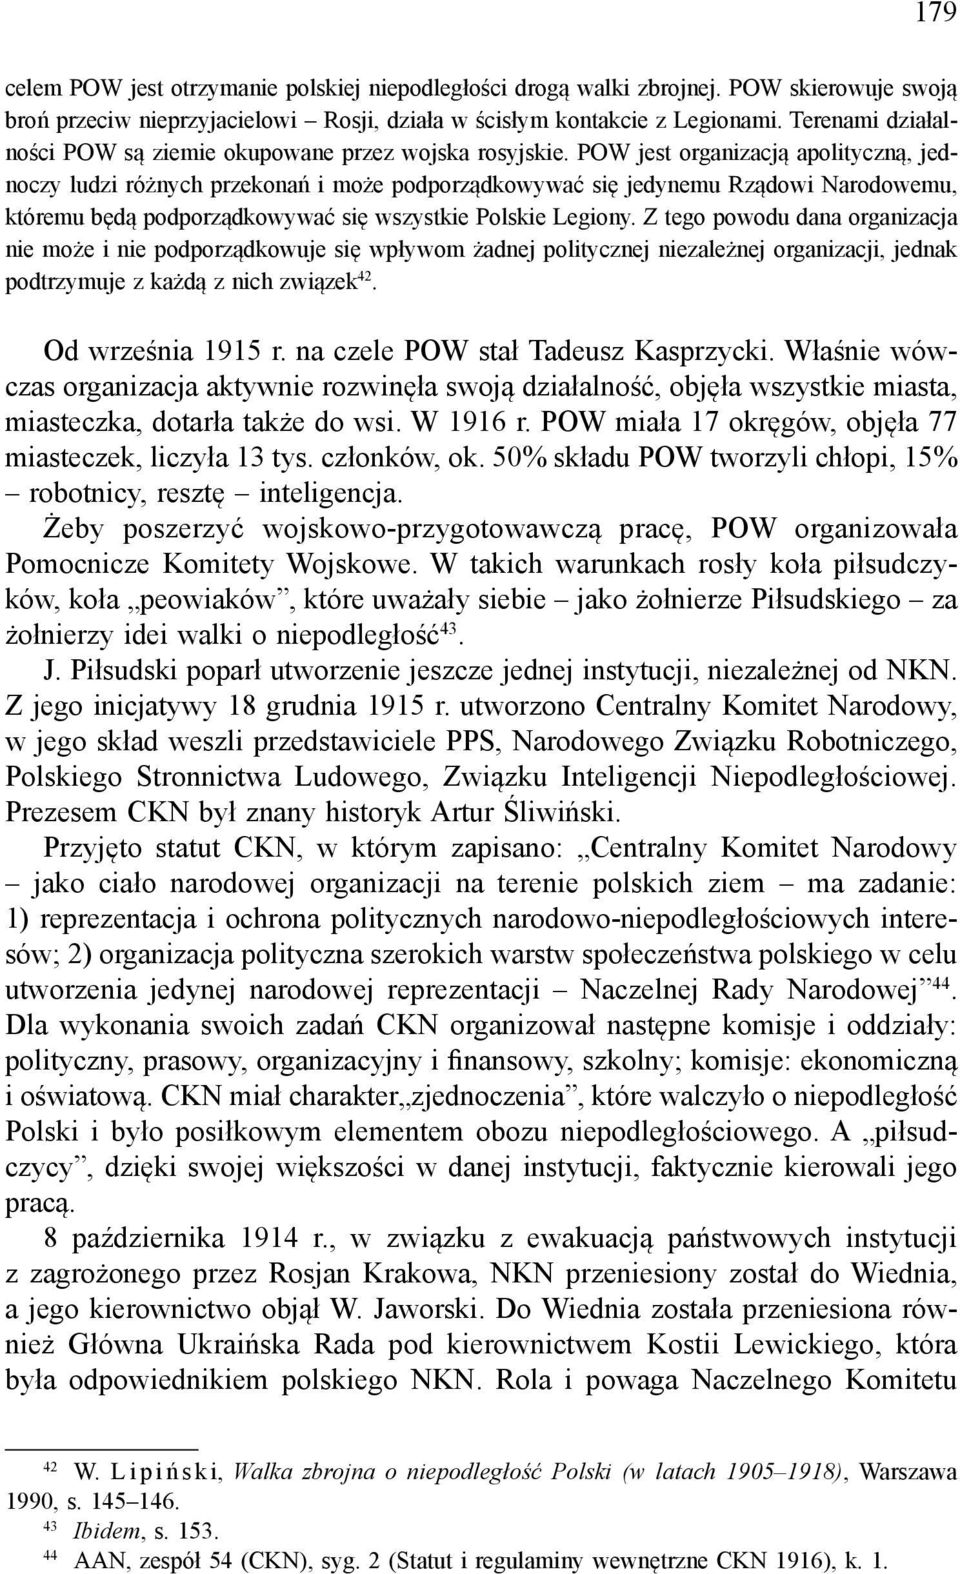 POW jest organizacją apolityczną, jednoczy ludzi różnych przekonań i może podporządkowywać się jedynemu Rządowi Narodowemu, któremu będą podporządkowywać się wszystkie Polskie Legiony.